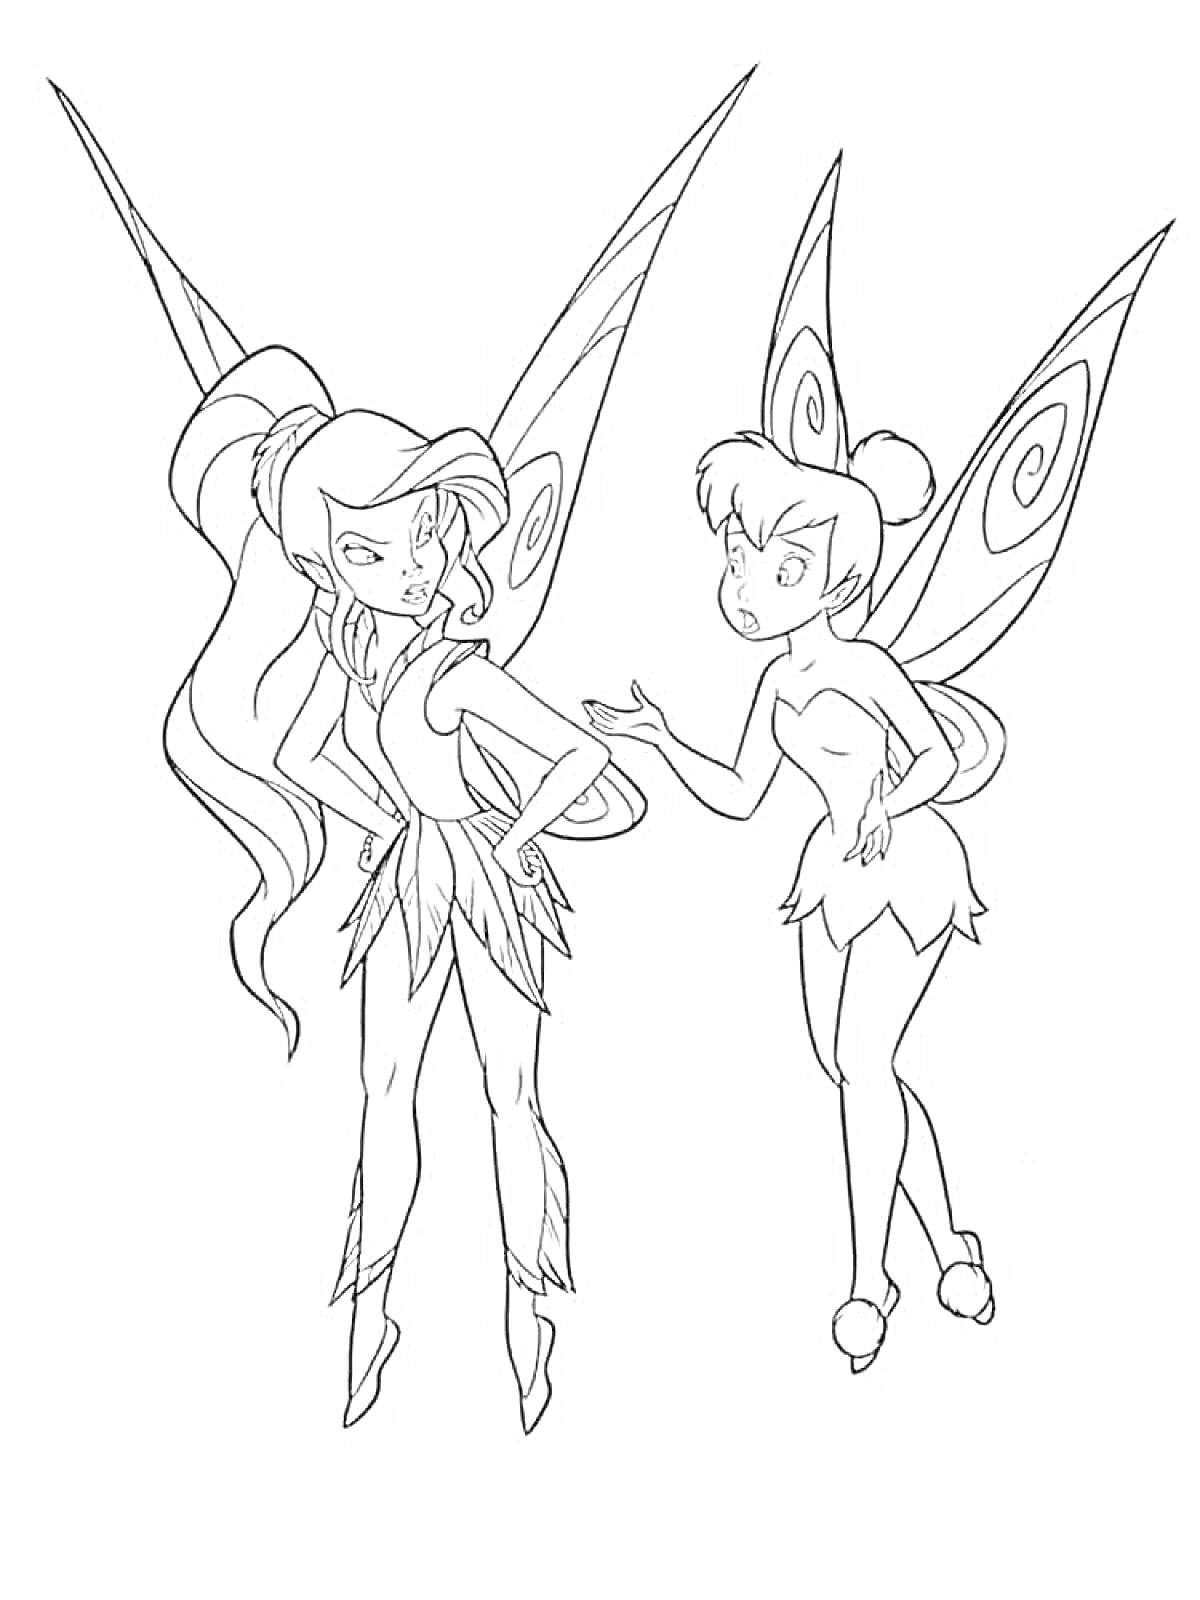 Раскраска Две феи Динь-Динь с крыльями, одна с длинными волосами и другая с короткими, в споре